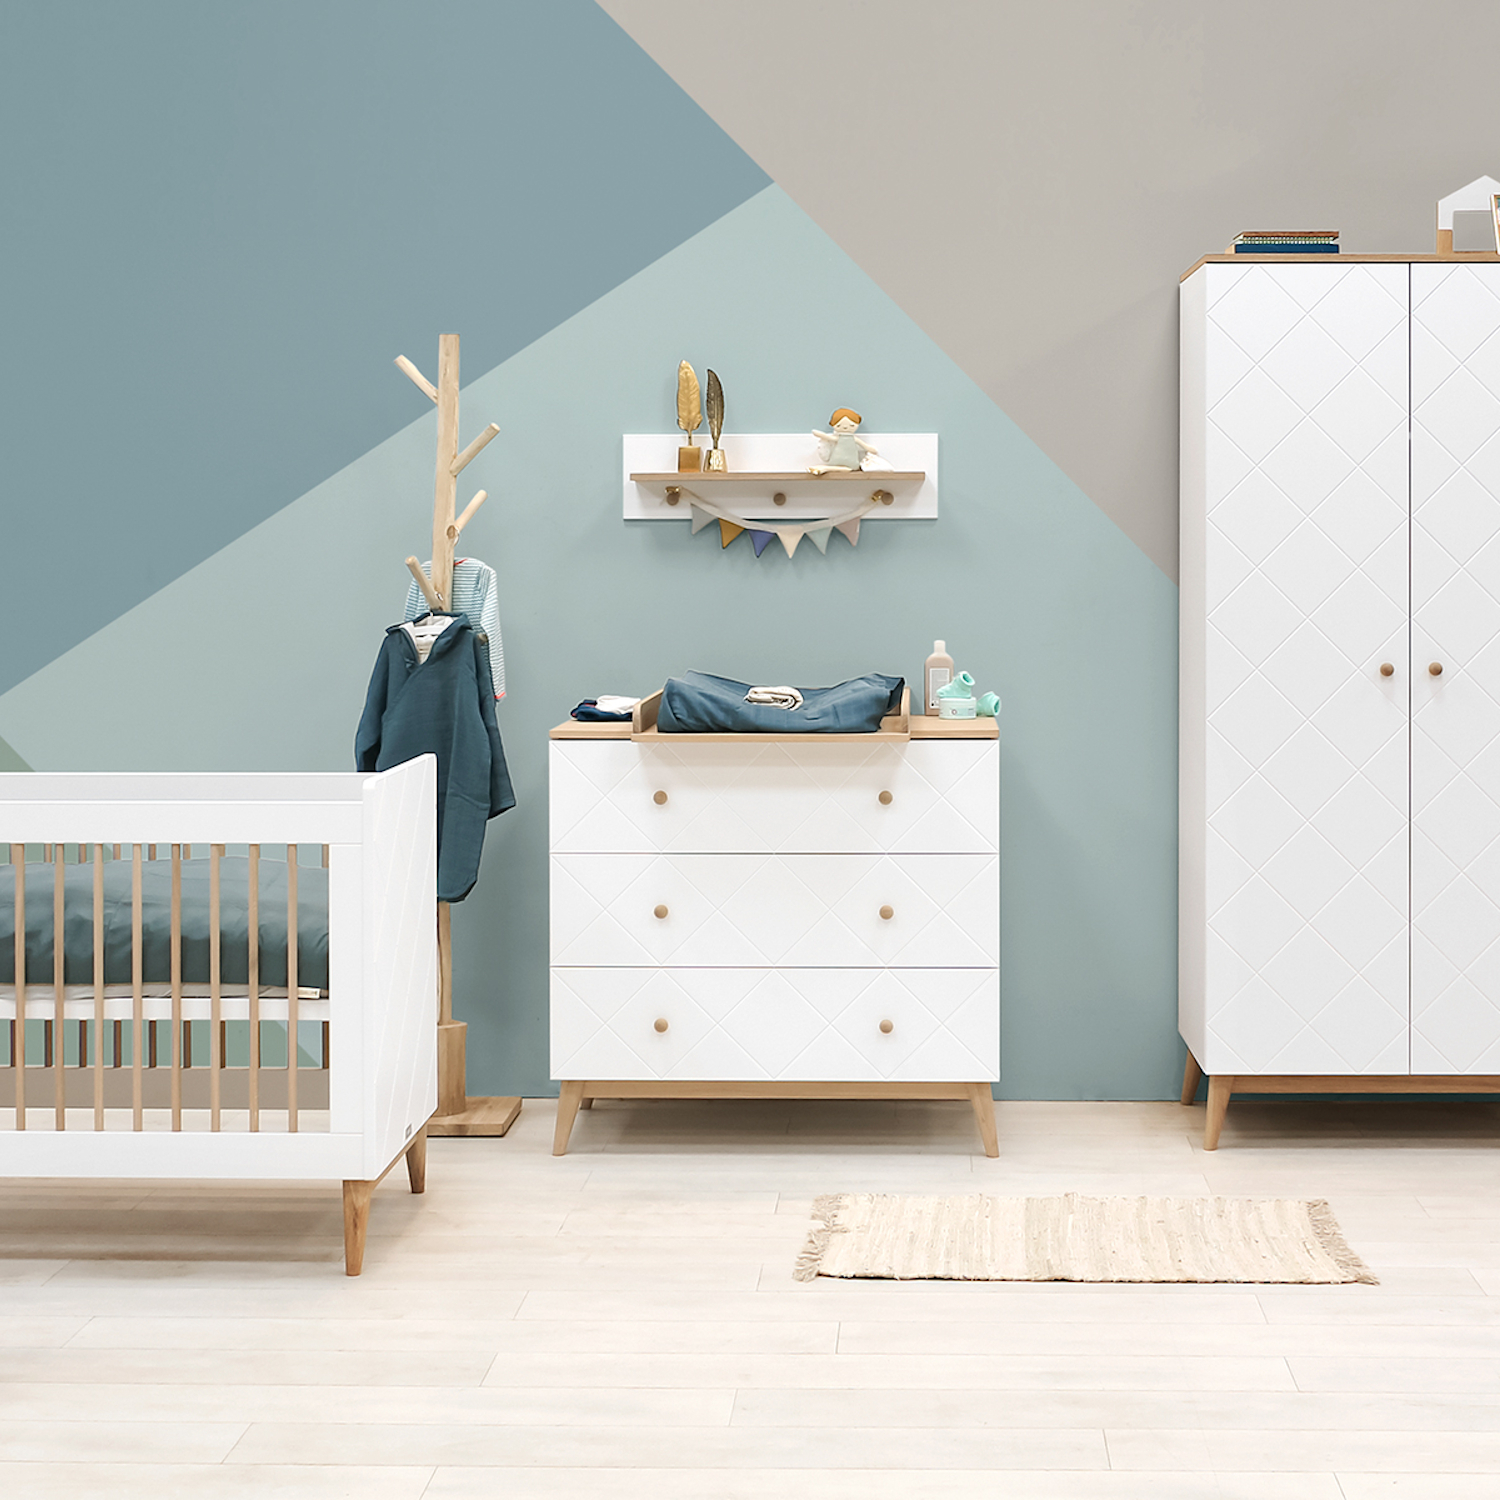 Bopita Paris Babykamer Wit / Eiken | Bed 70 x 140 cm + Commode + Kast 3-deurs